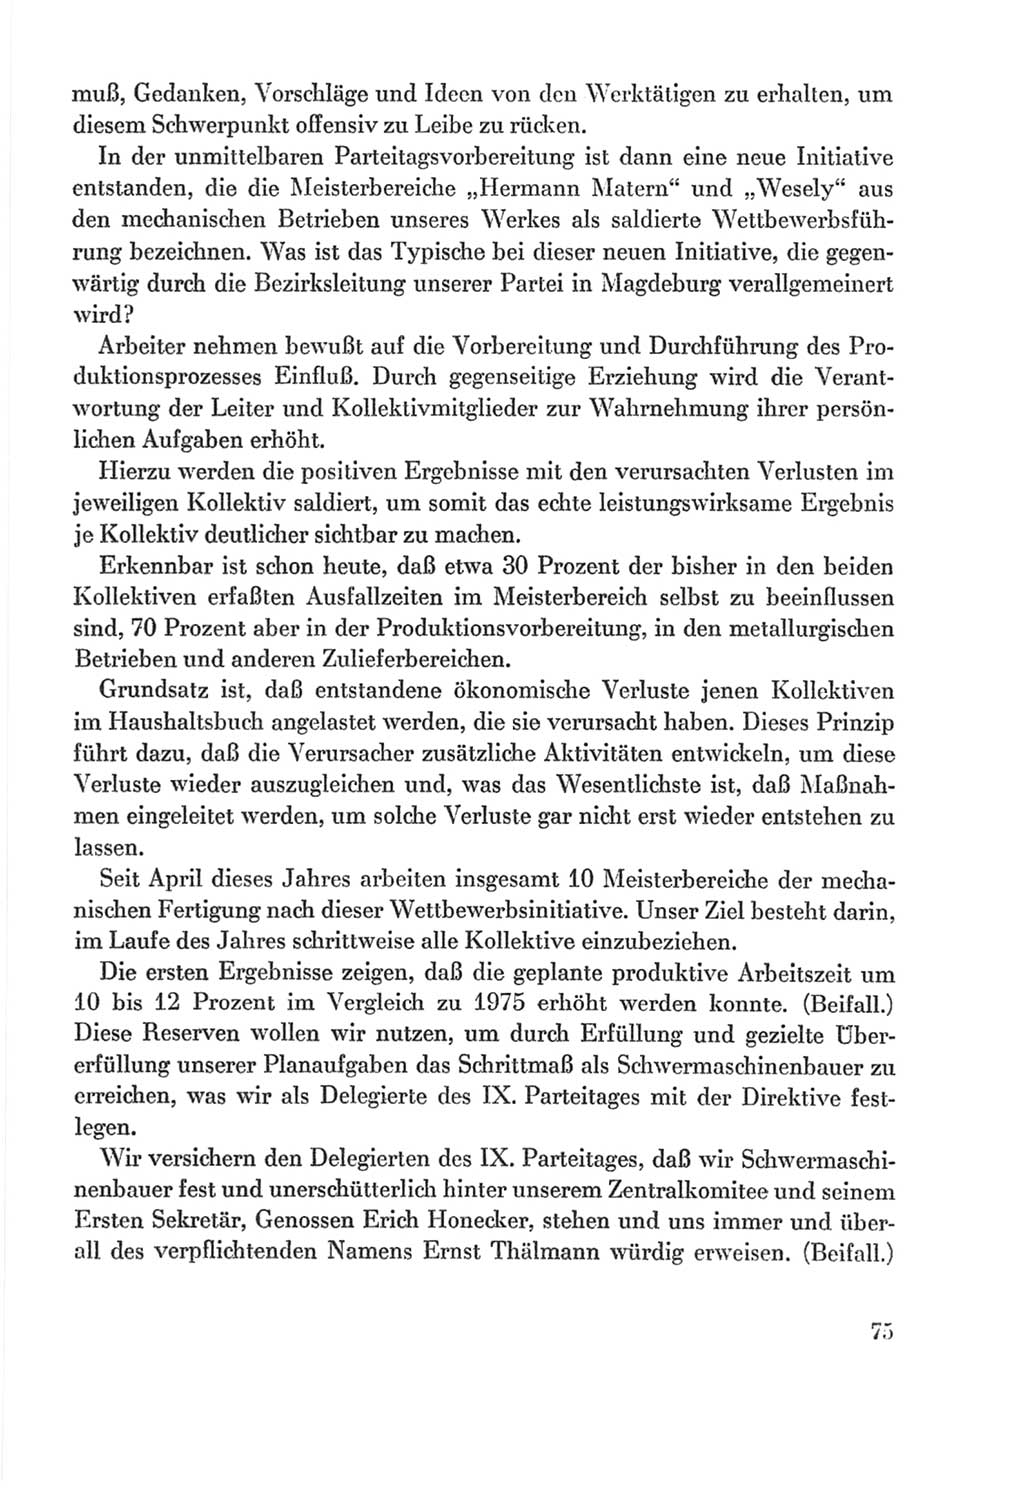 Protokoll der Verhandlungen des Ⅸ. Parteitages der Sozialistischen Einheitspartei Deutschlands (SED) [Deutsche Demokratische Republik (DDR)] 1976, Band 2, Seite 75 (Prot. Verh. Ⅸ. PT SED DDR 1976, Bd. 2, S. 75)